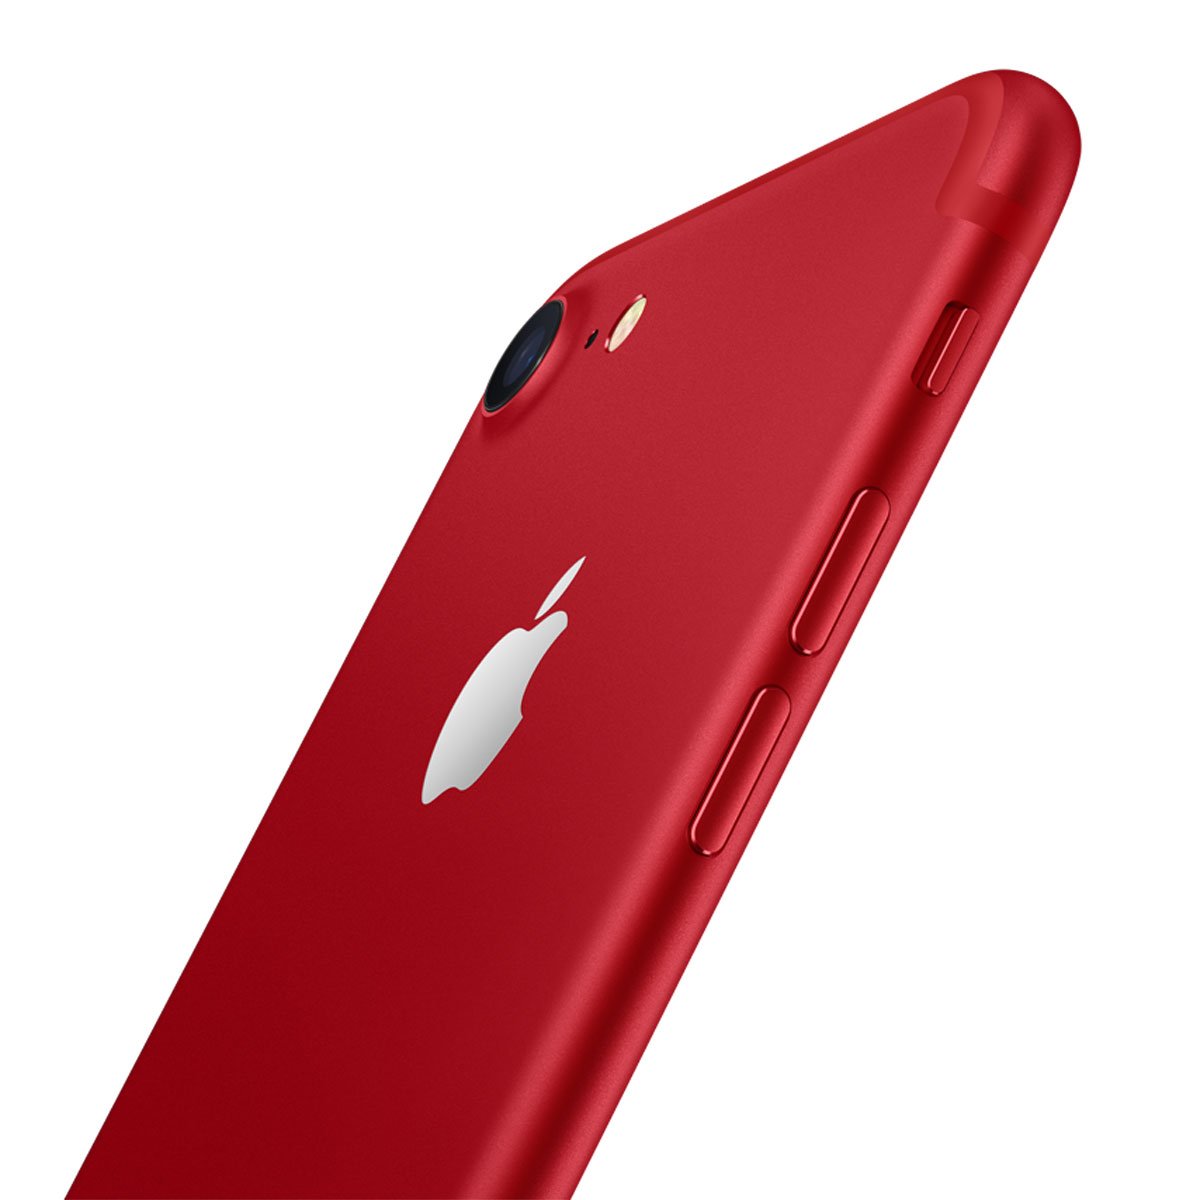 Celular Iphone 7 Plus  Color Rojo 128 Gb R9 (Telcel)